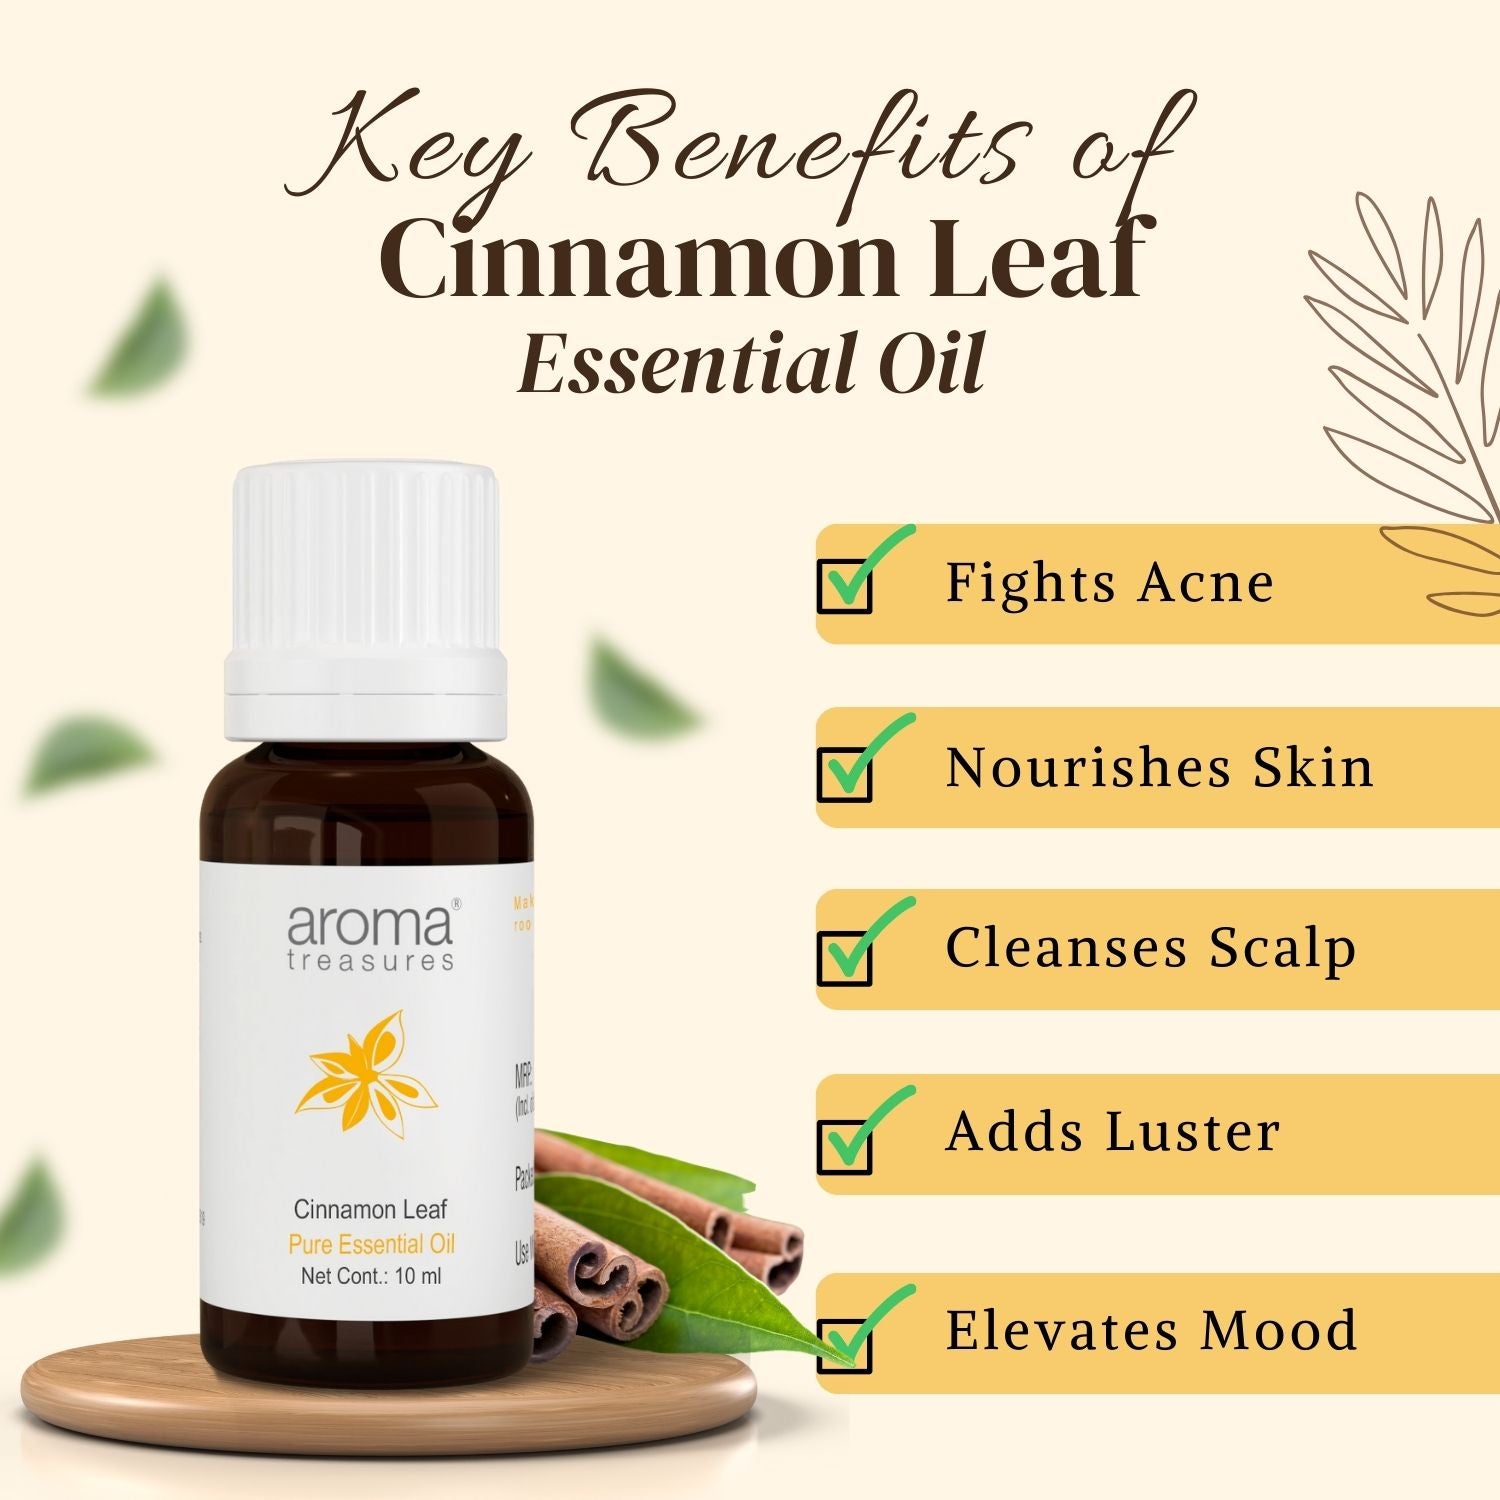 Cinnamon Rosemary Herbal Hair Oil, Growth serum, Hair Growth, Cinnamon Hair  Oil - Asha + Miel Body Care